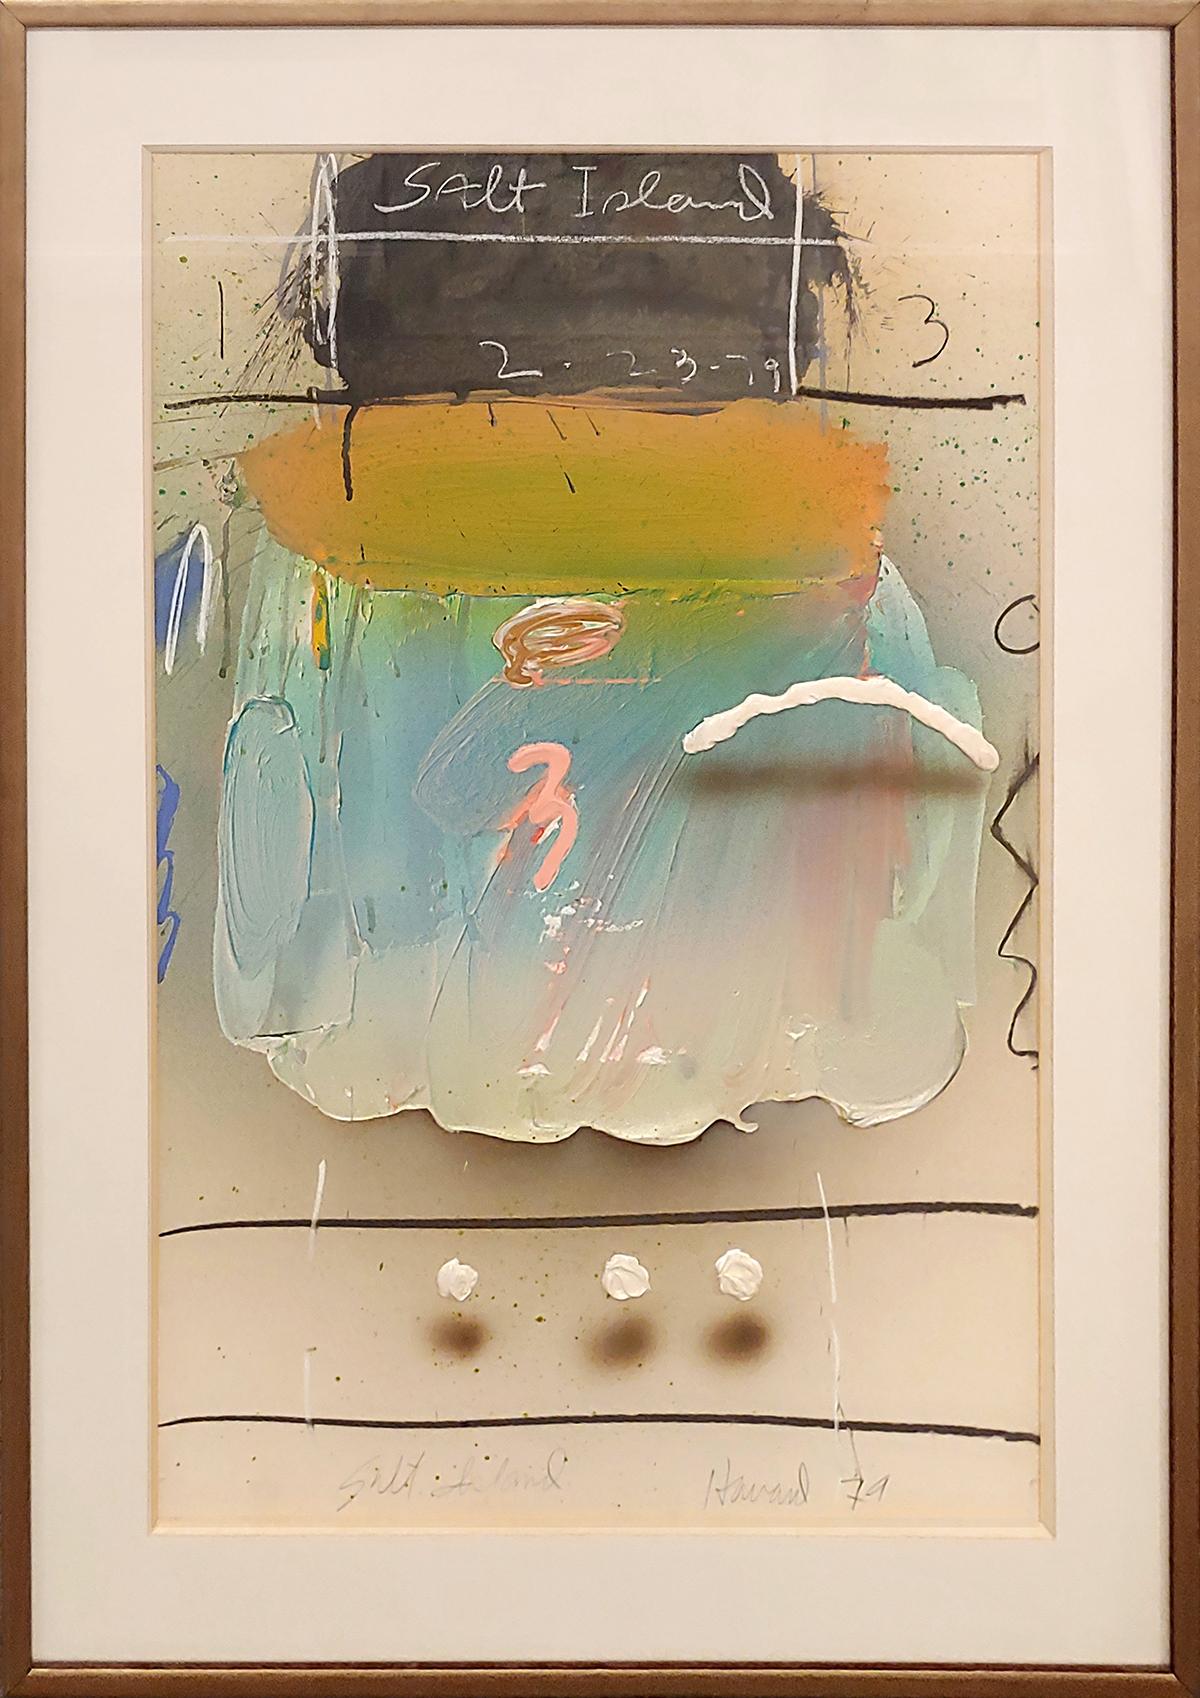 Abstract Painting James Havard - Peinture acrylique sur carton 37x27" de l'artiste collectionné au musée Abstract Illusion 